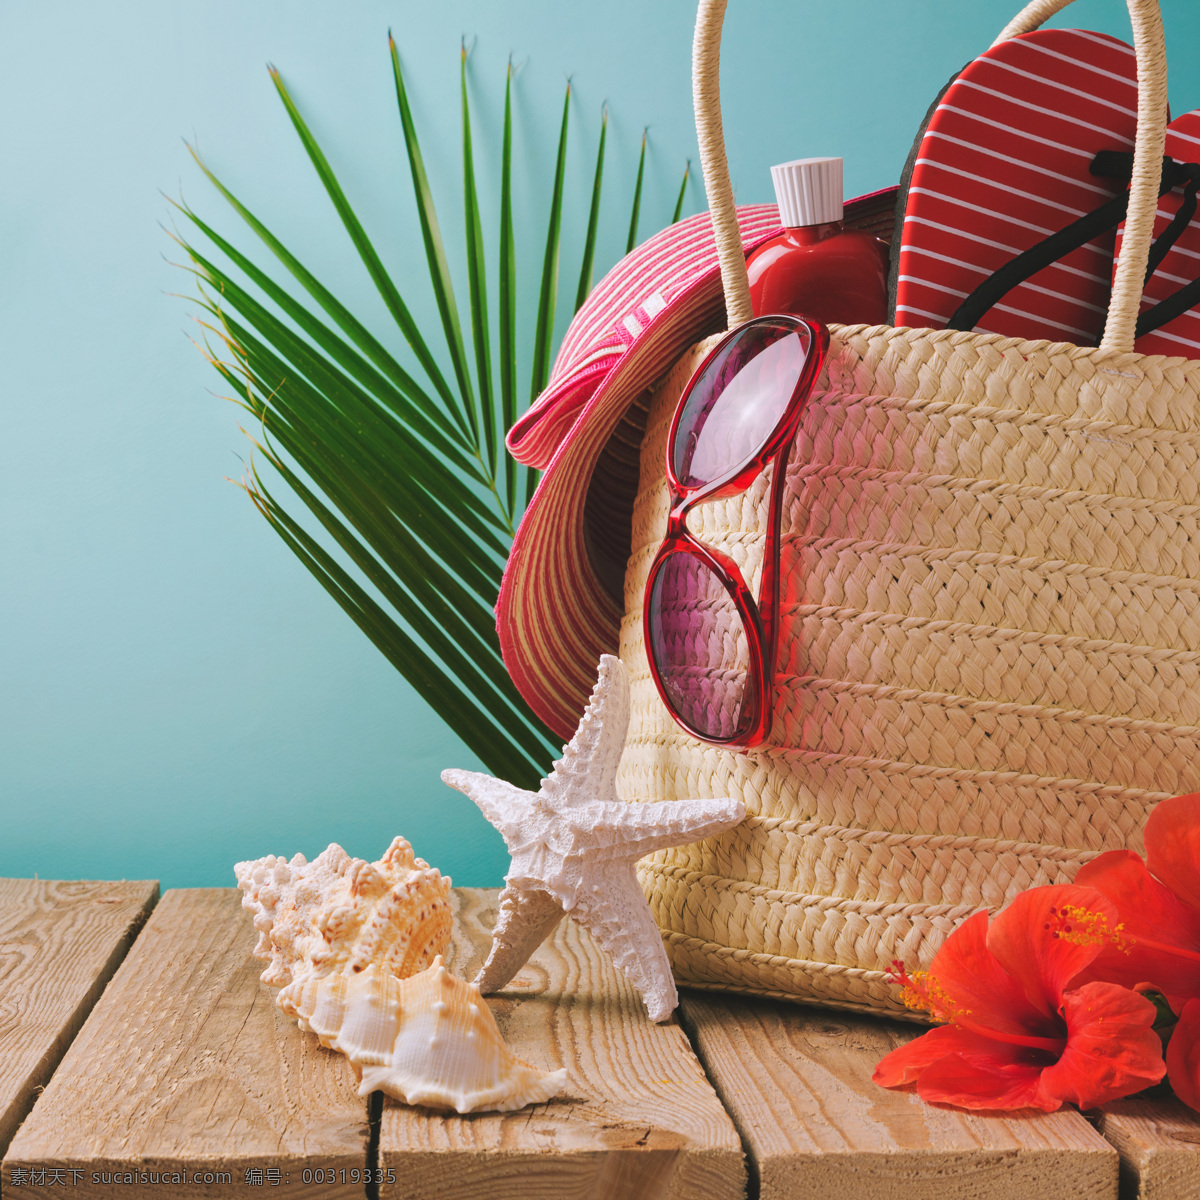 夏季 海星 编织袋 太阳镜 木板 遮阳帽 花朵 海边主题 夏季主题 其他类别 生活百科